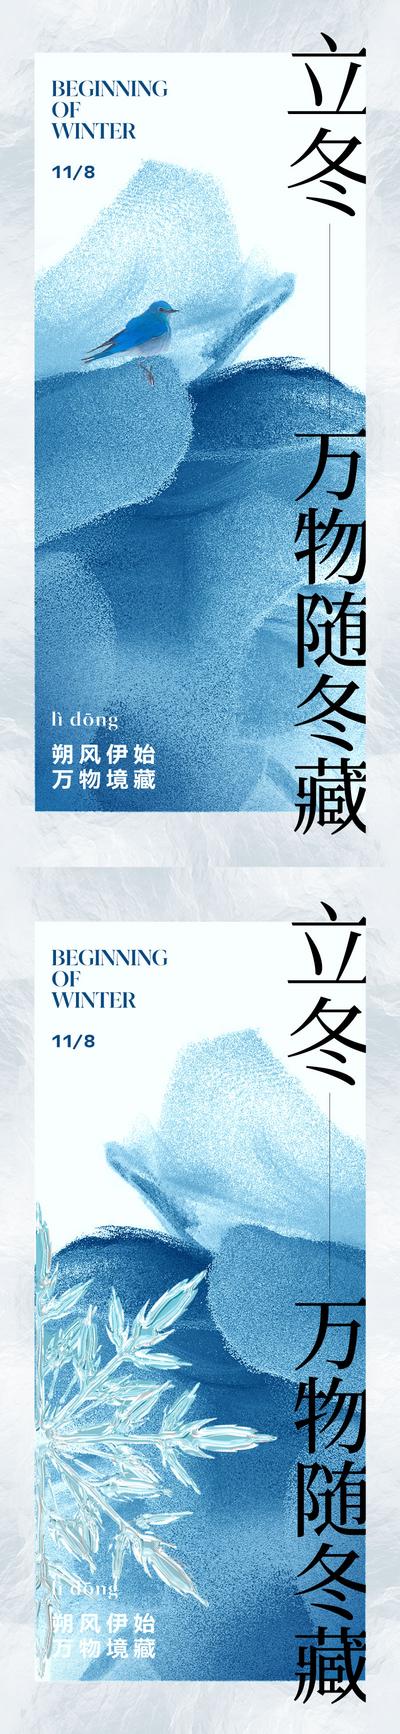 南门网 海报 二十四节气 立冬 冬天 冬季 美学 东方 创意